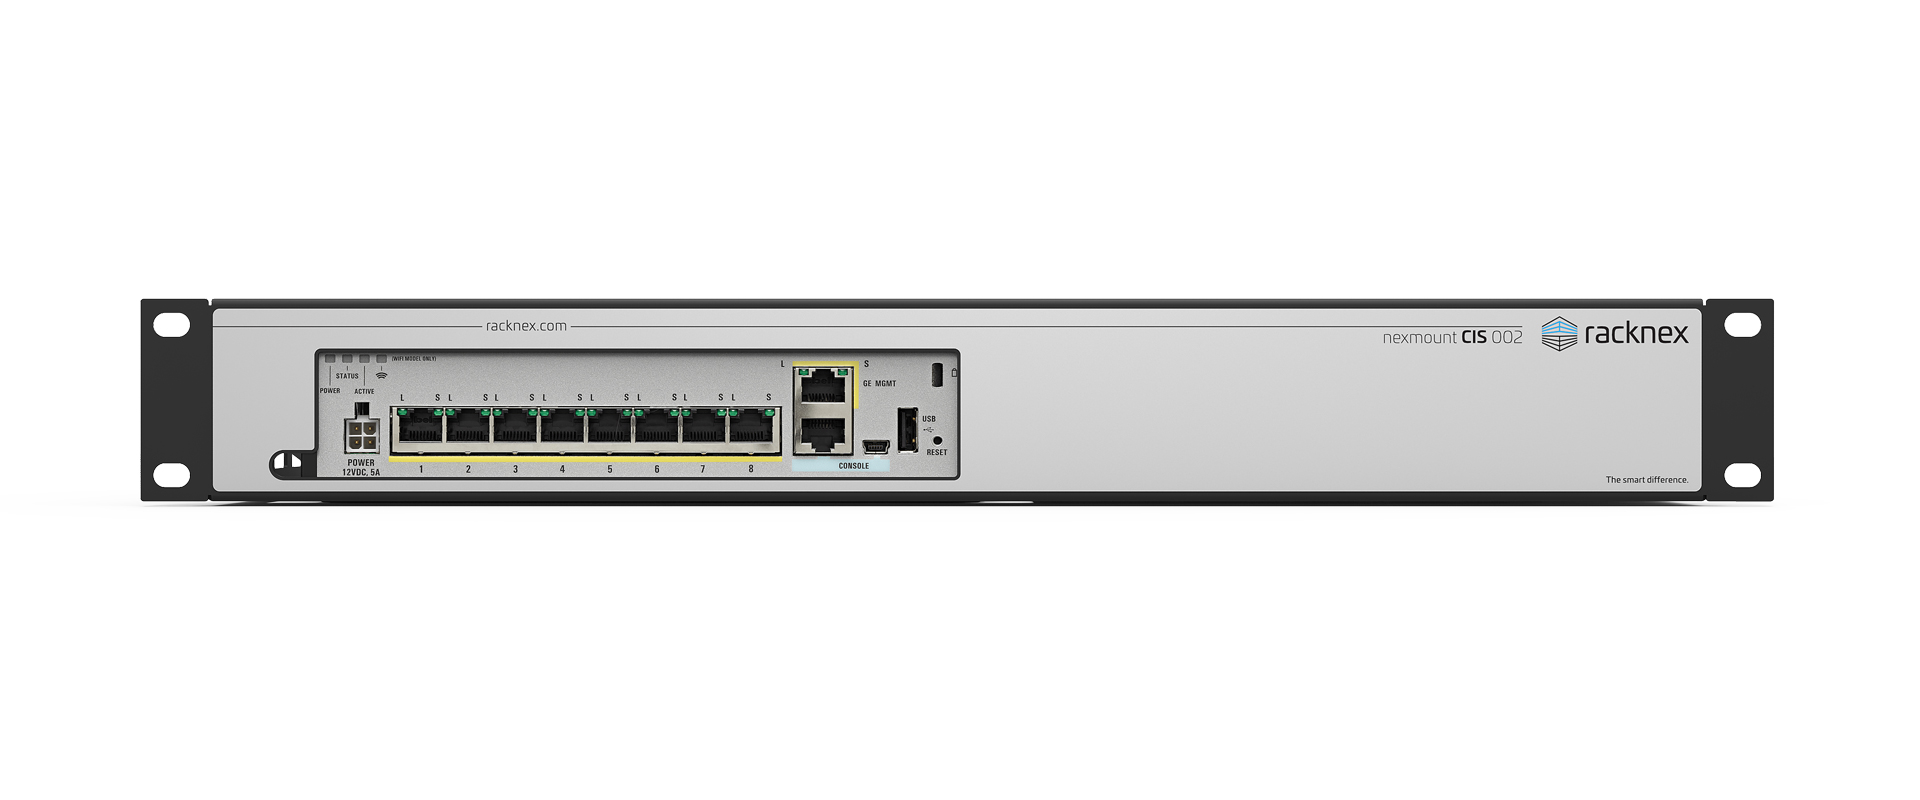 Cisco ASA 5506-X Rackmount Kit - NM-CIS-002